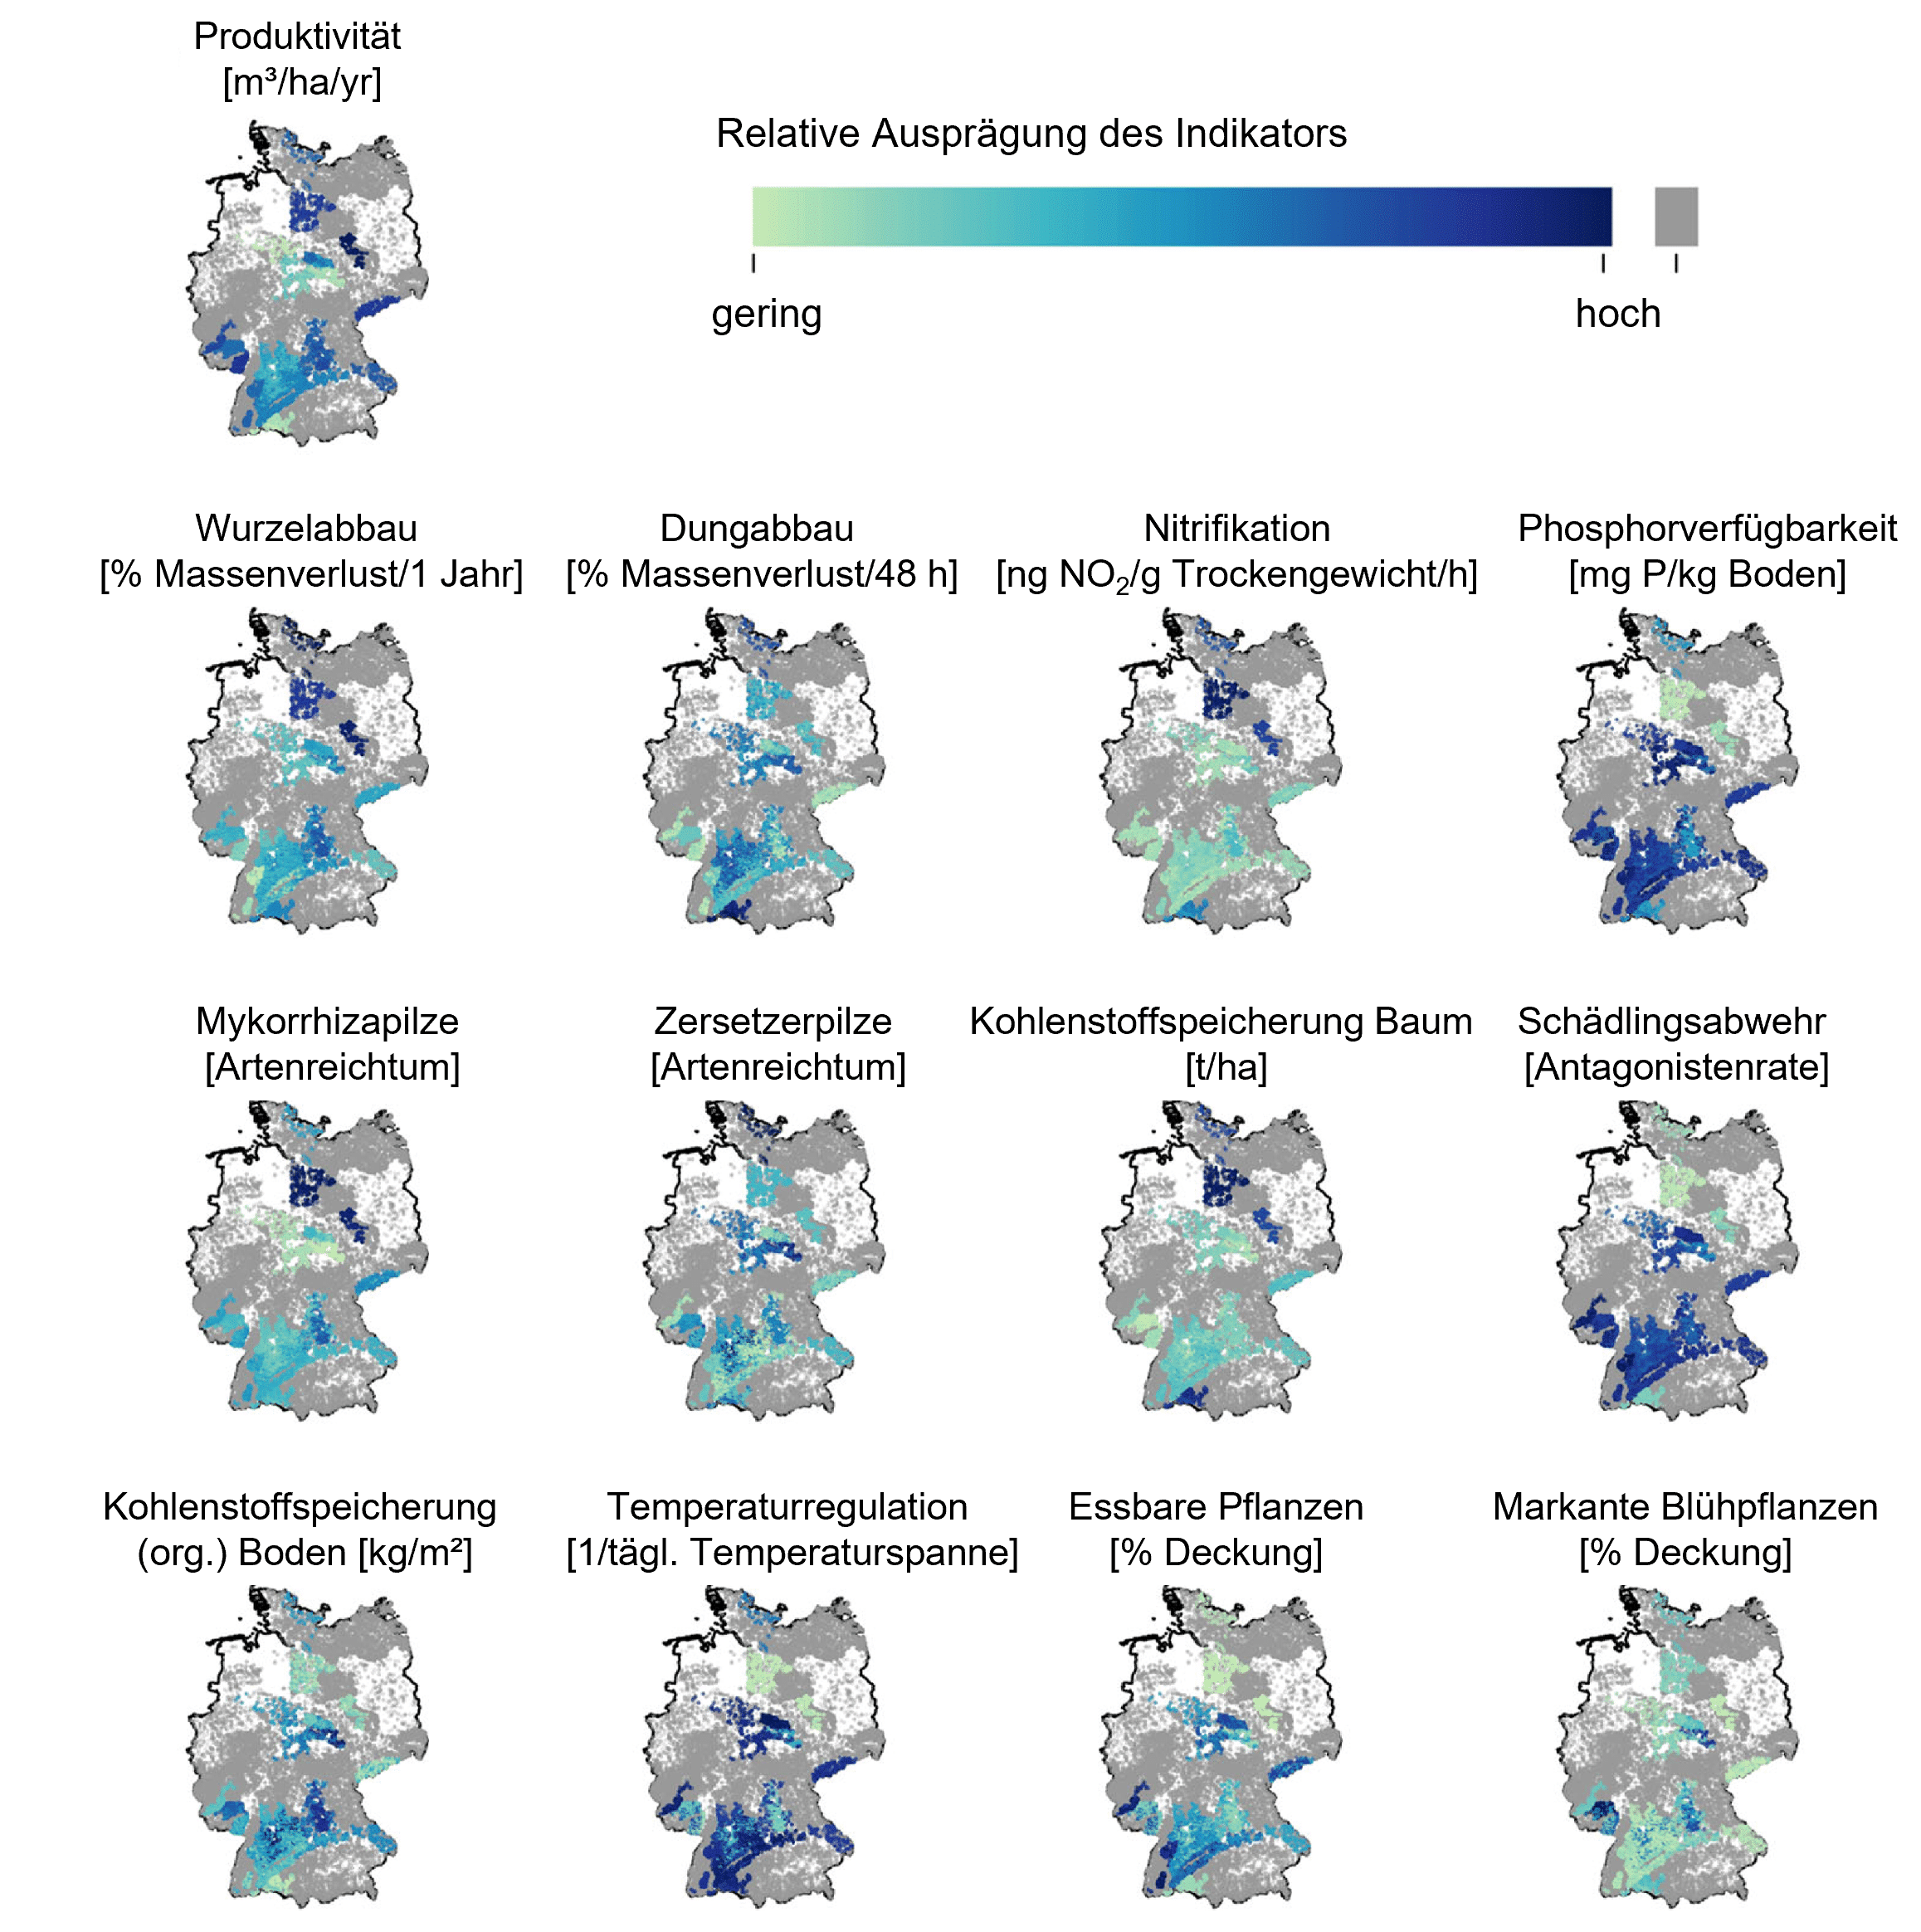 Abbildung: Die Grafik zeigt dreizehn Deutschlandkarten, in denen die vorhergesagte mittlere Stärke unterschiedlicher Indikatoren für Ökosystemleistungen auf siebentausendvierhundertsechsundzwanzig Inventurflächen der Bundeswaldinventur drei abgebildet sind. Je nach relativer Ausprägung eines Indikators von gering bis hoch variiert die Markierungsfarbe von hellgrün bis dunkelblau. Folgende dreizehn Indikatoren sind abgebildet: Produktivität, Wurzelabbau, Dungabbau, Nitrifikation, Phosphorverfügbarkeit, Mykorrhizapilze, Zerstetzerpilze, Kohlenstoffspeicherung Baum, Kohlenstoffspeicherung Boden, Schädlingsabwehr, Temperaturregulation, essbare Pflanzen, markante Blühpflanzen.